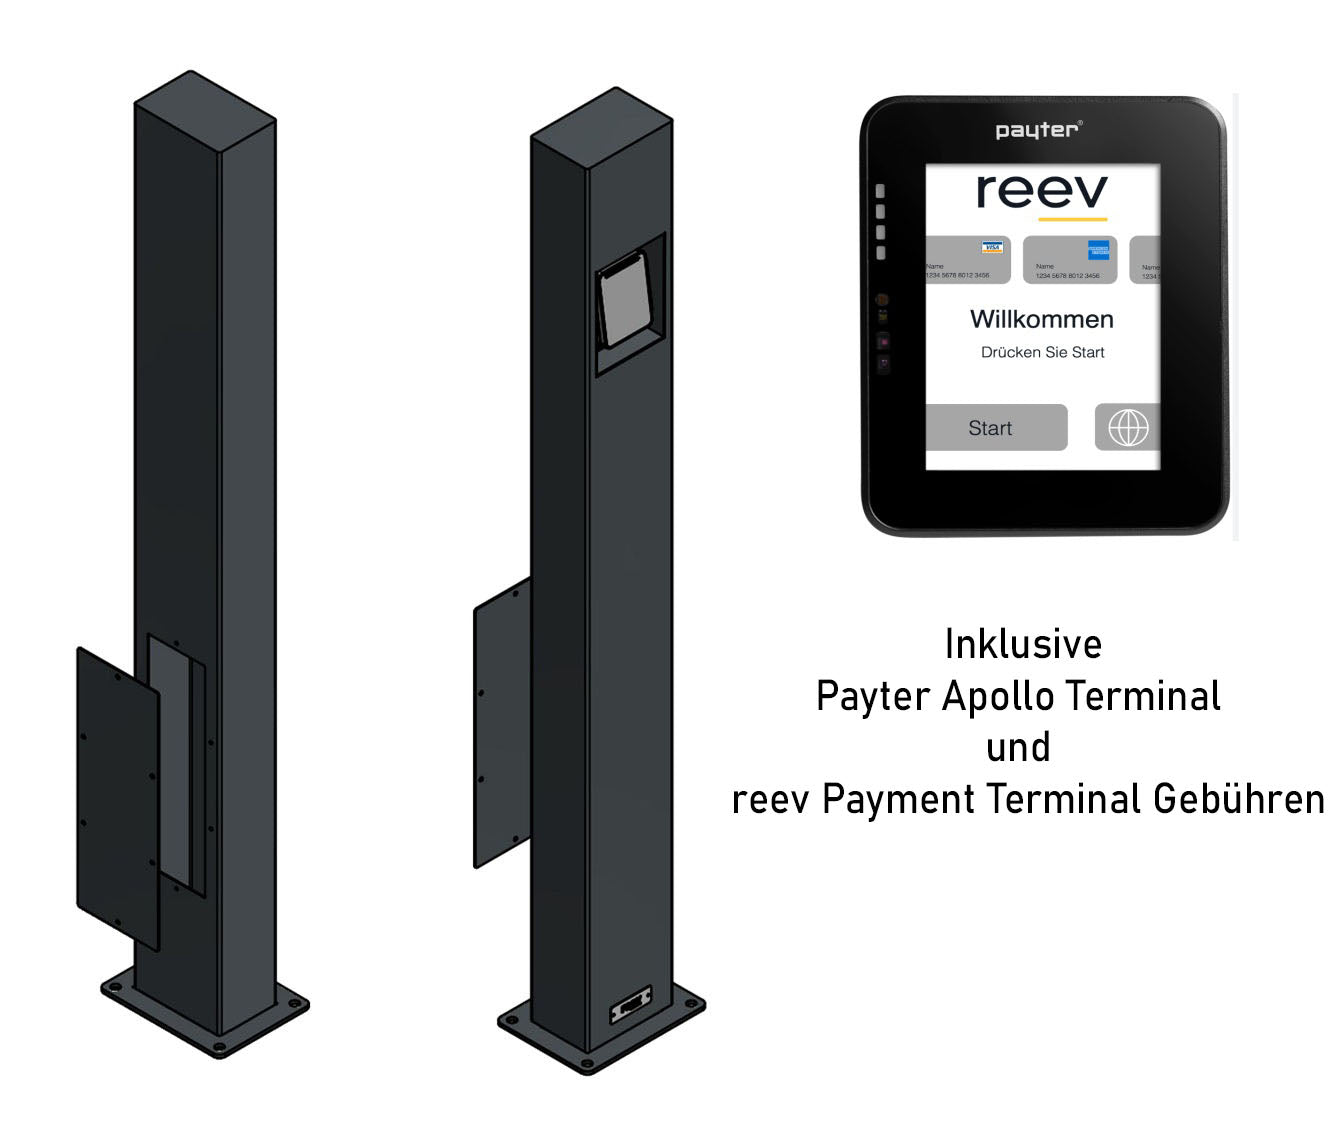 reev Payment Terminal - payment terminal including 24 months reev Payment Terminal fee